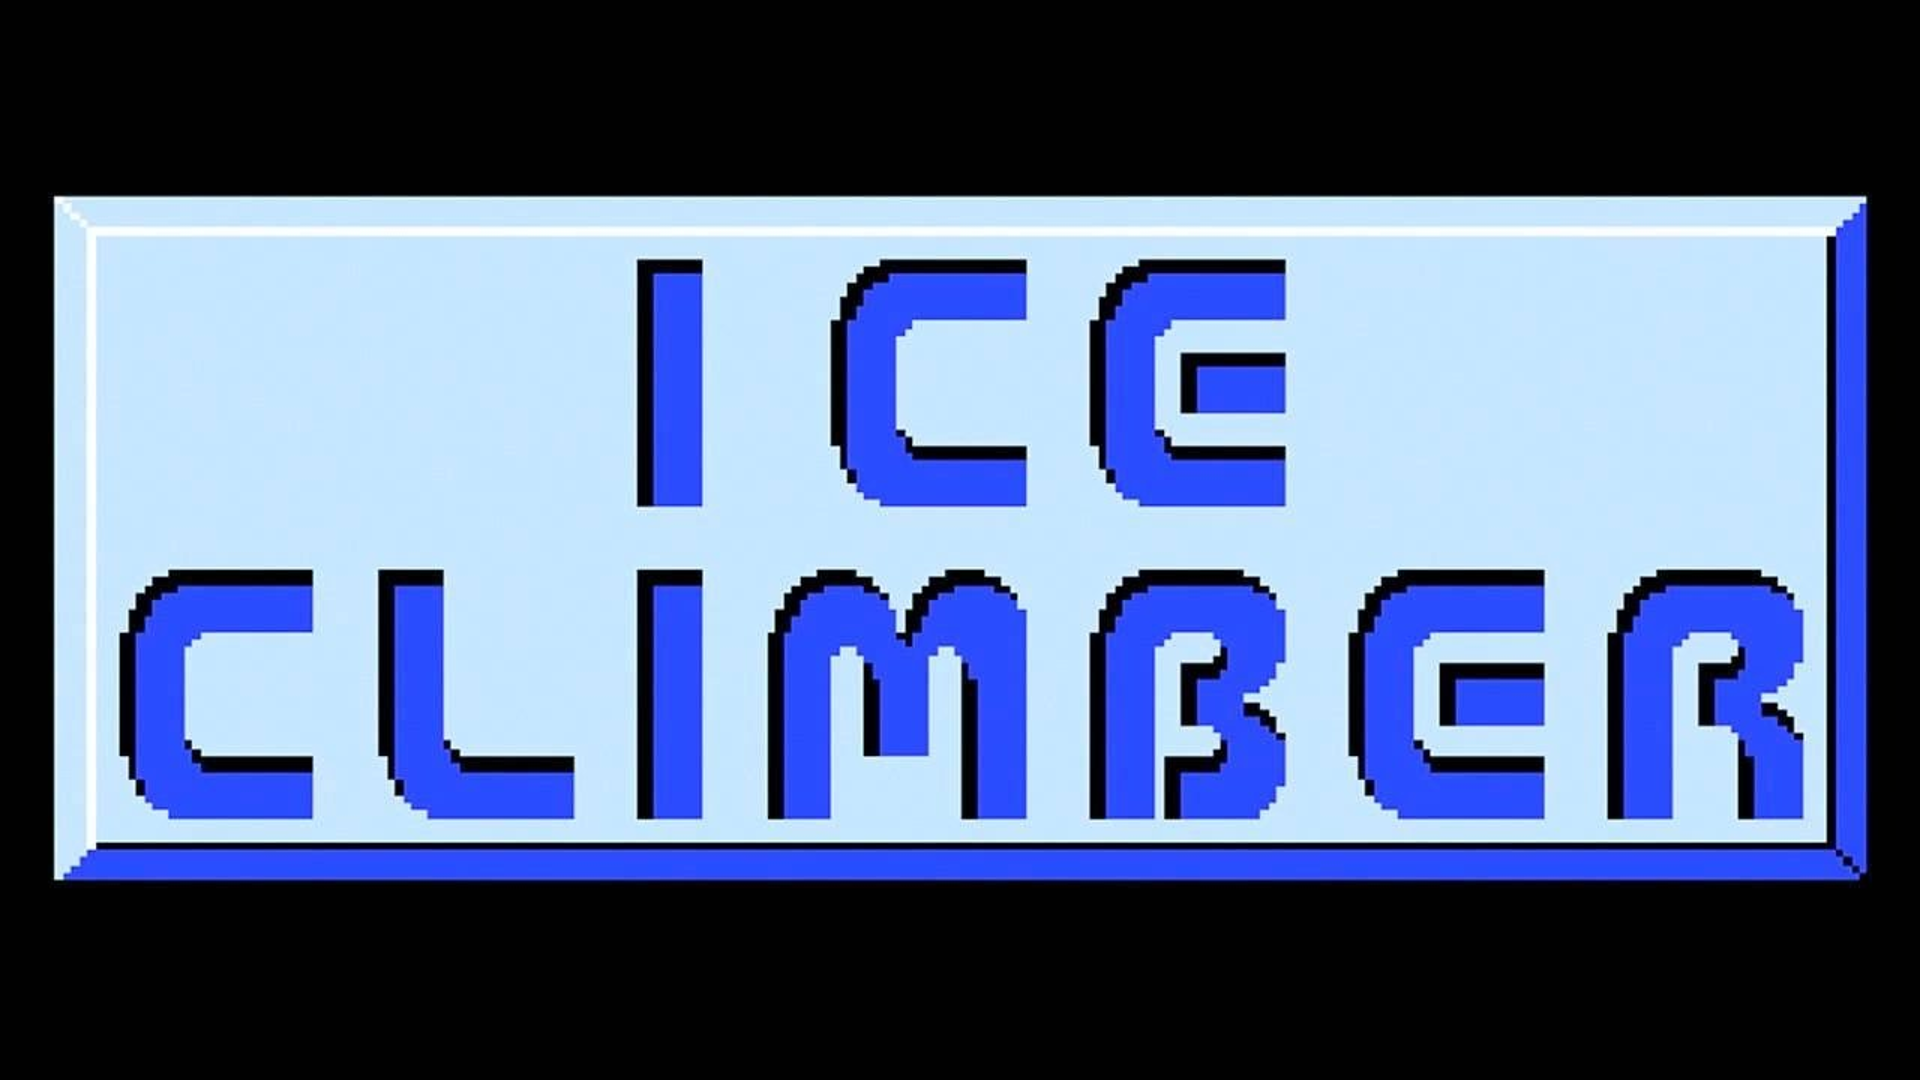 Ice Climber Logo